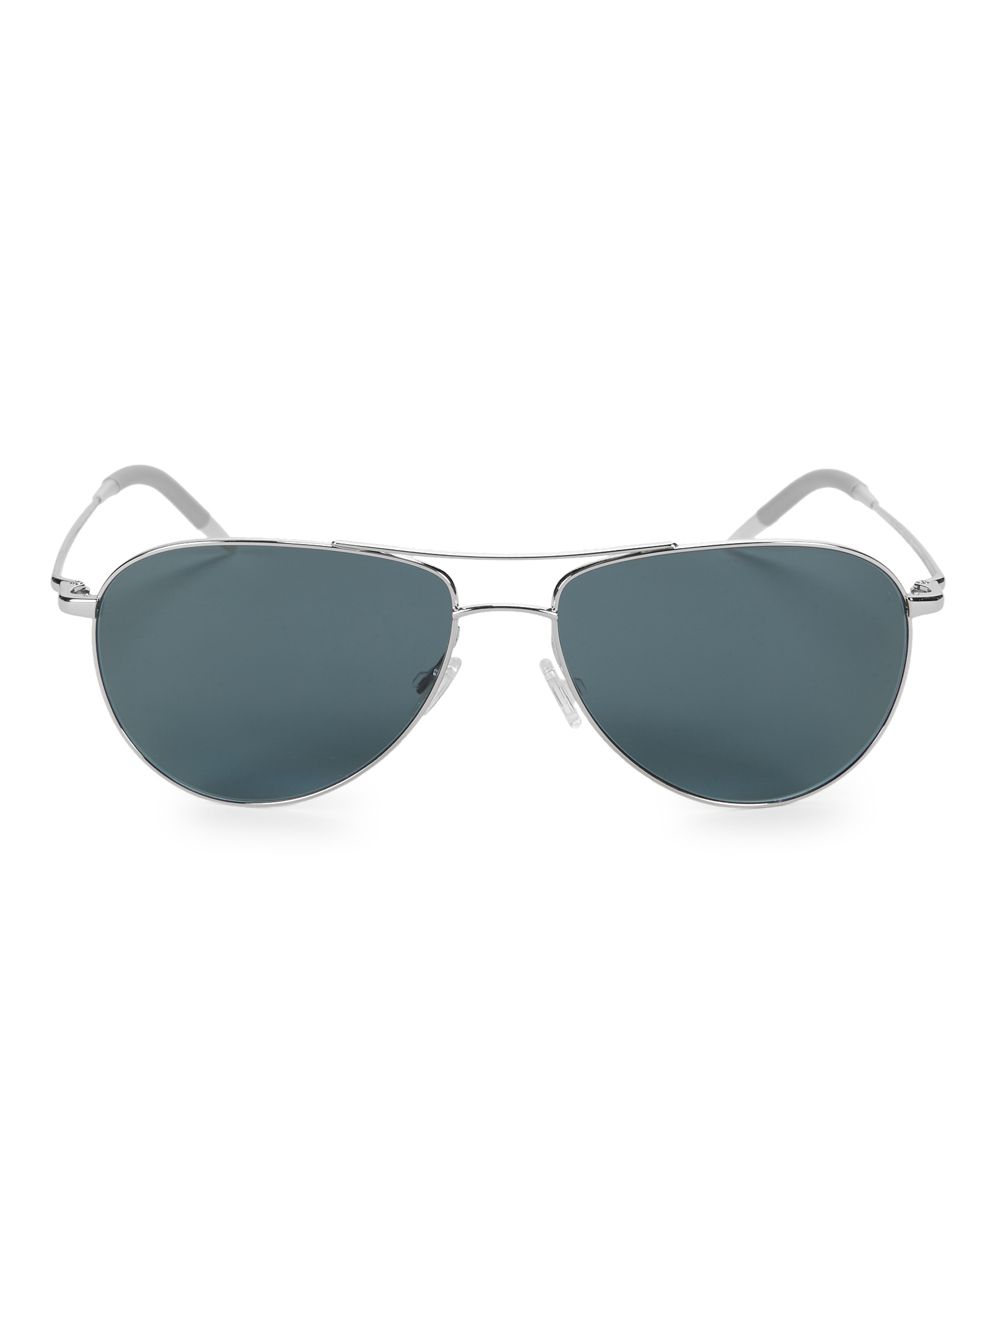 Поляризованные солнцезащитные очки-авиаторы Benedict 59MM Oliver Peoples, серебряный